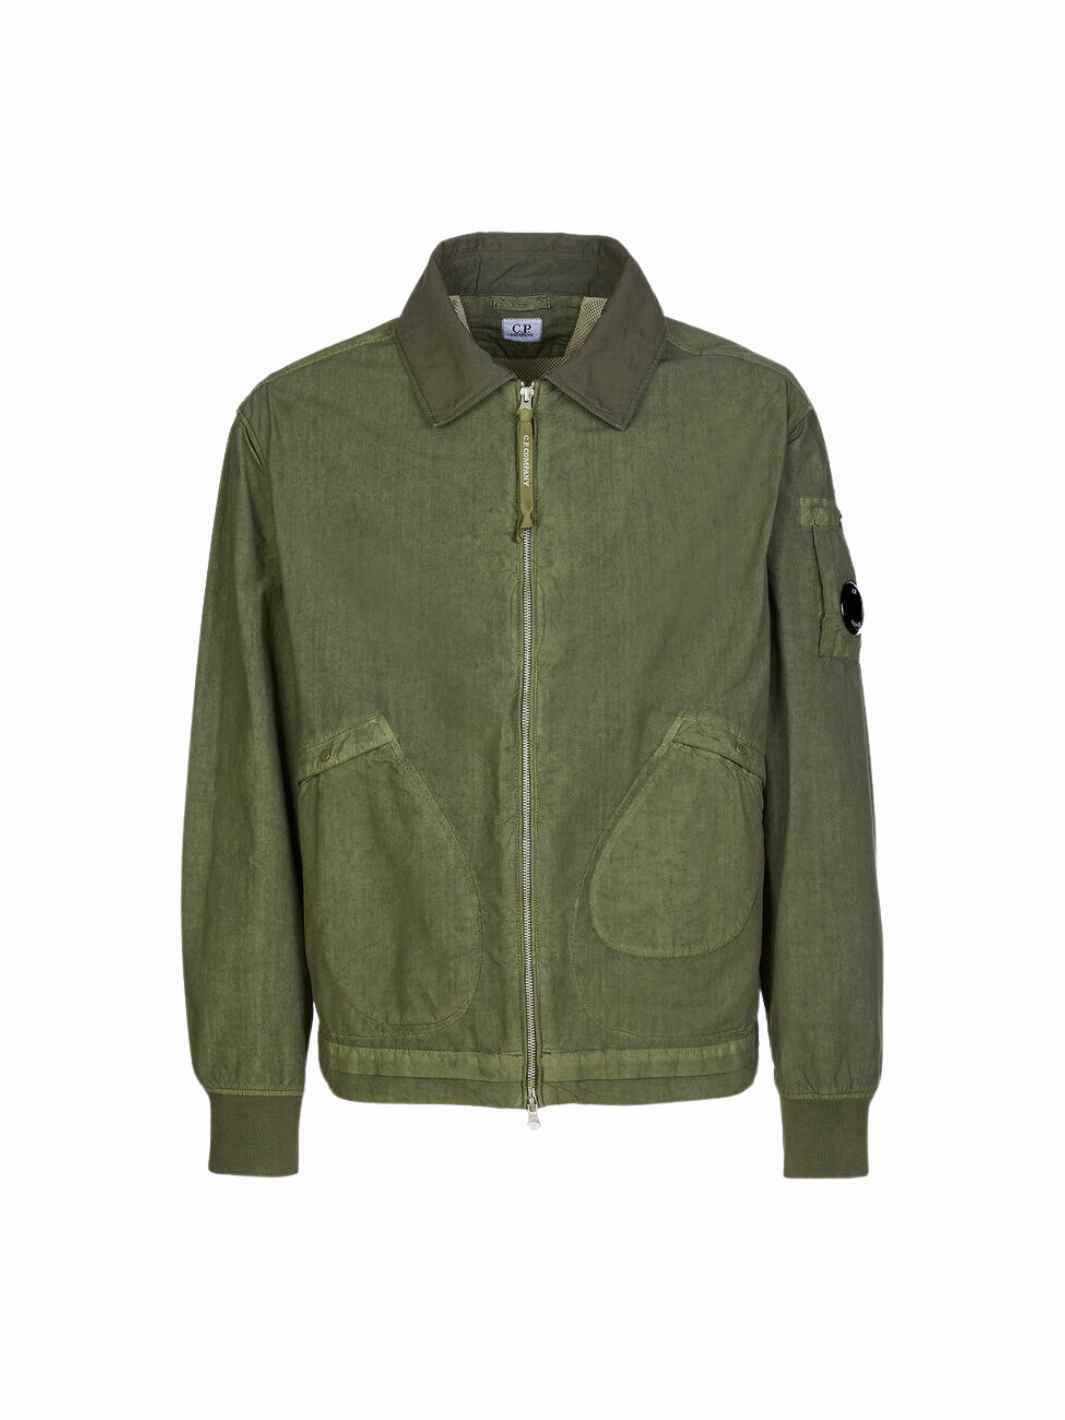 C.P. Company Outerwear Jakke | Short Jacket Bronze Green